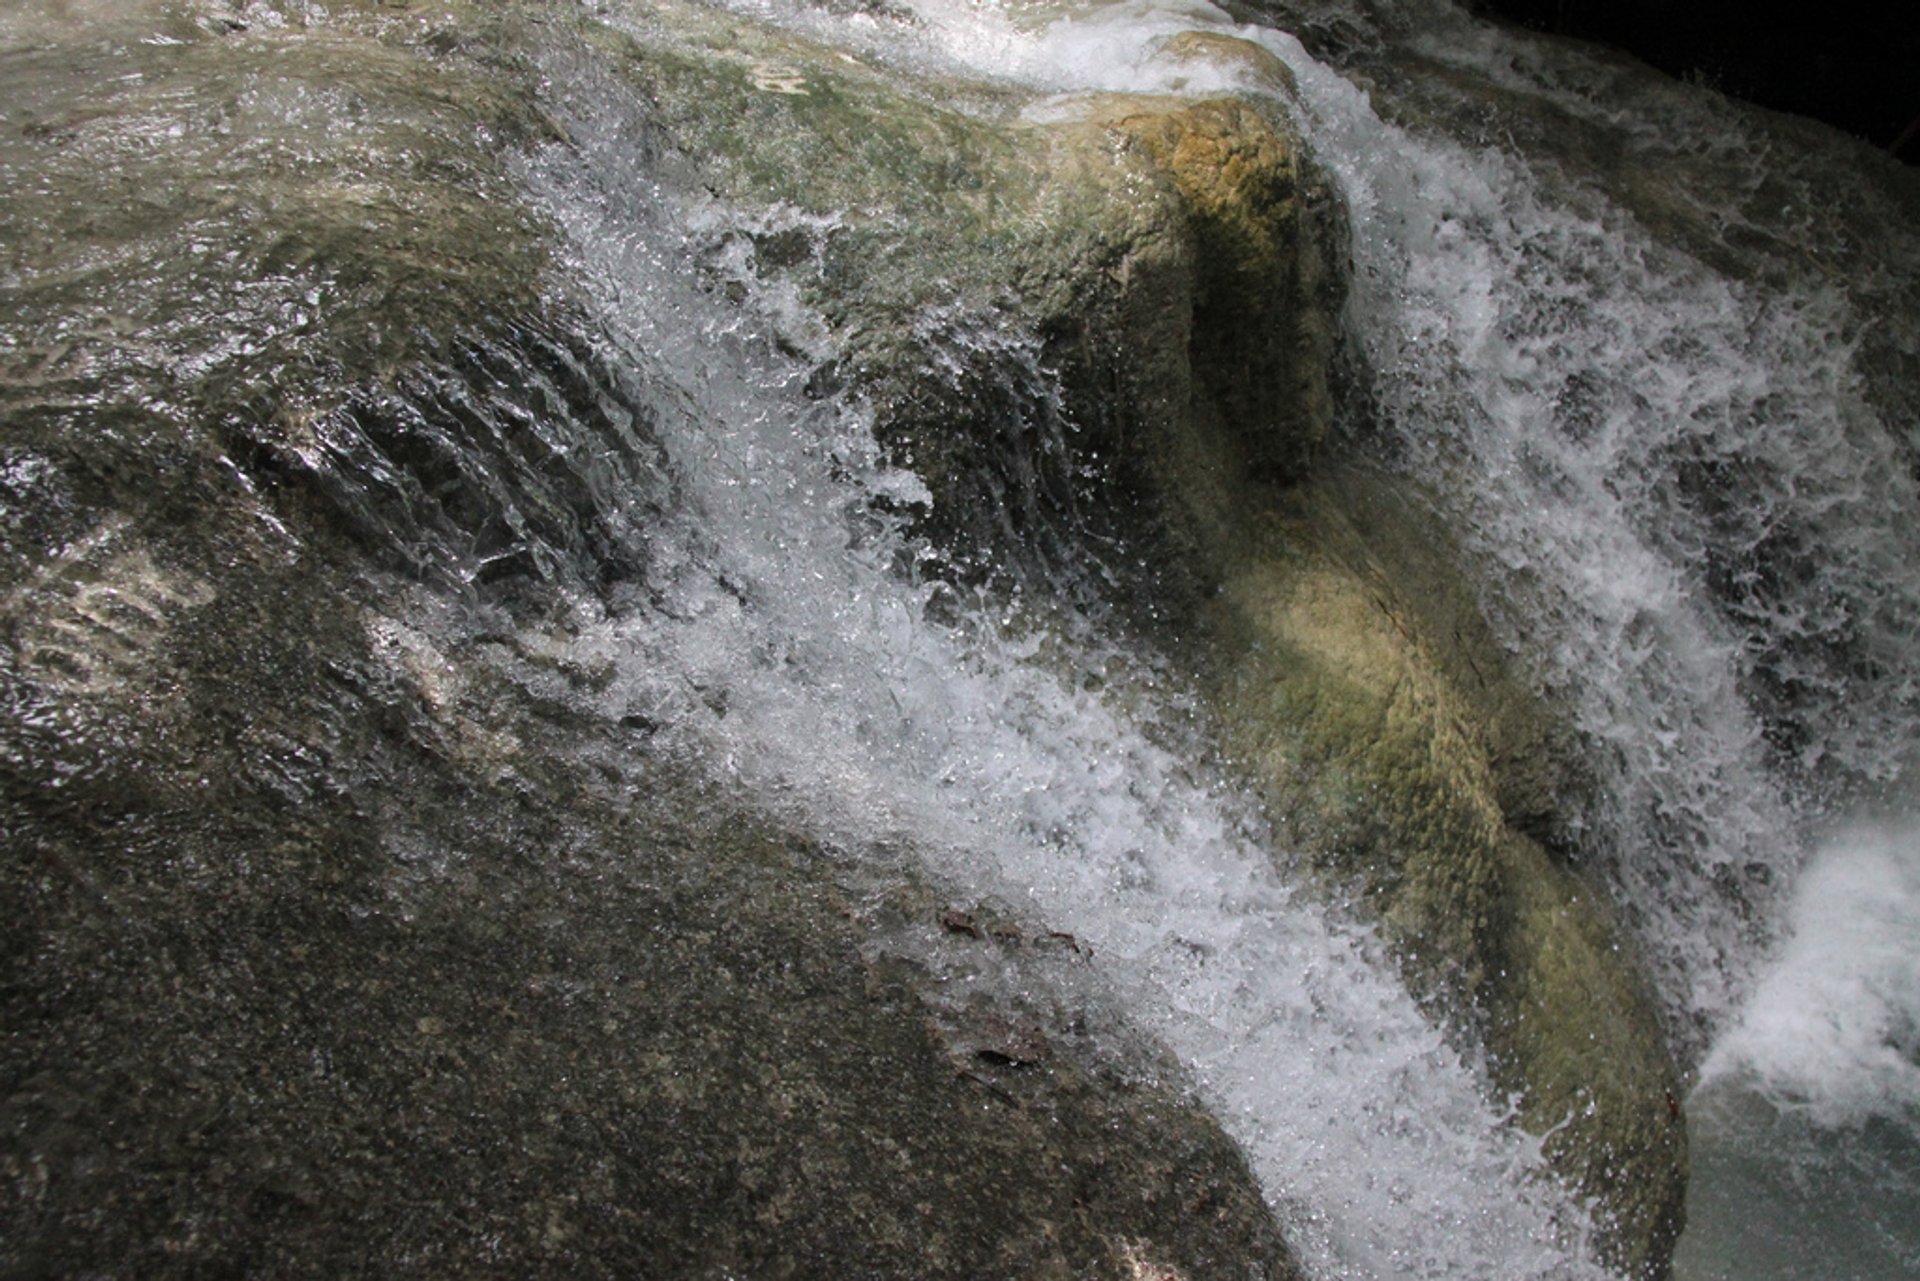 Aguinid Falls